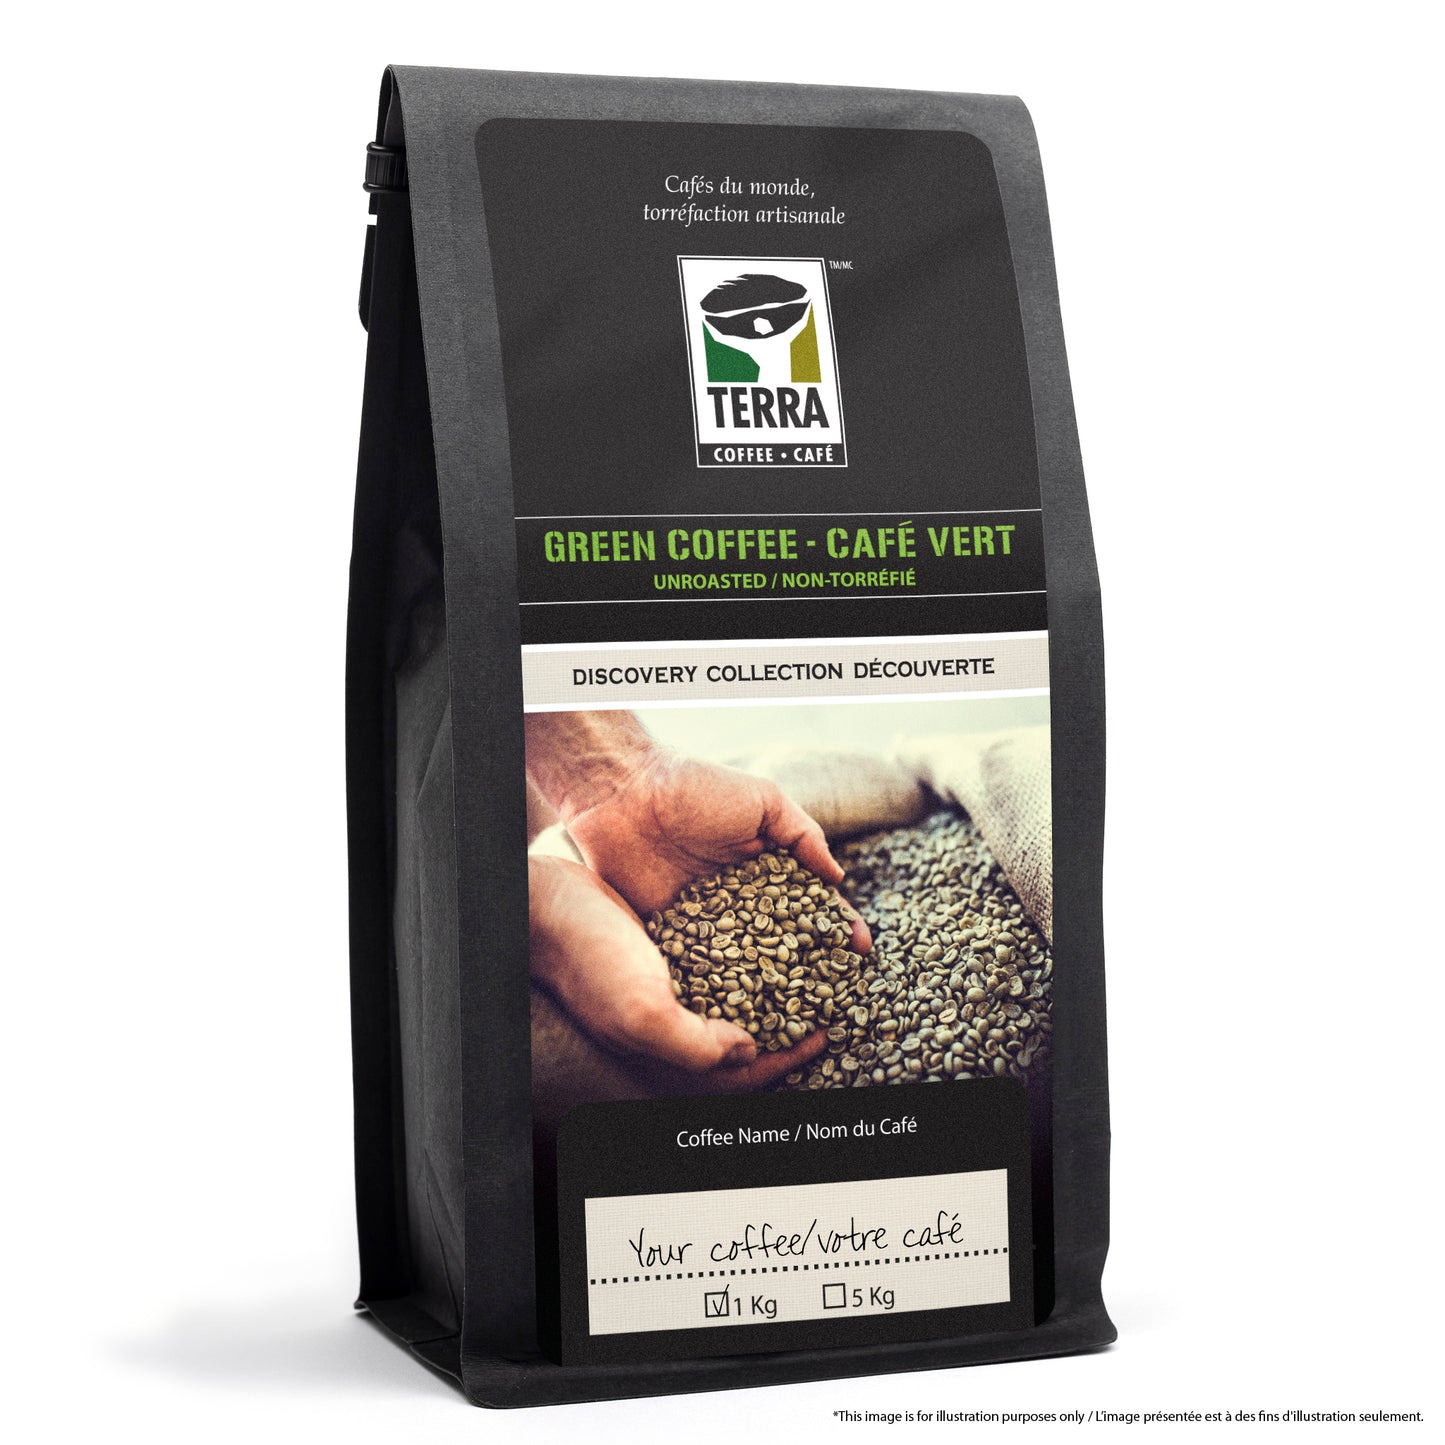 Origins Blend - Certified RFA - Green Coffee